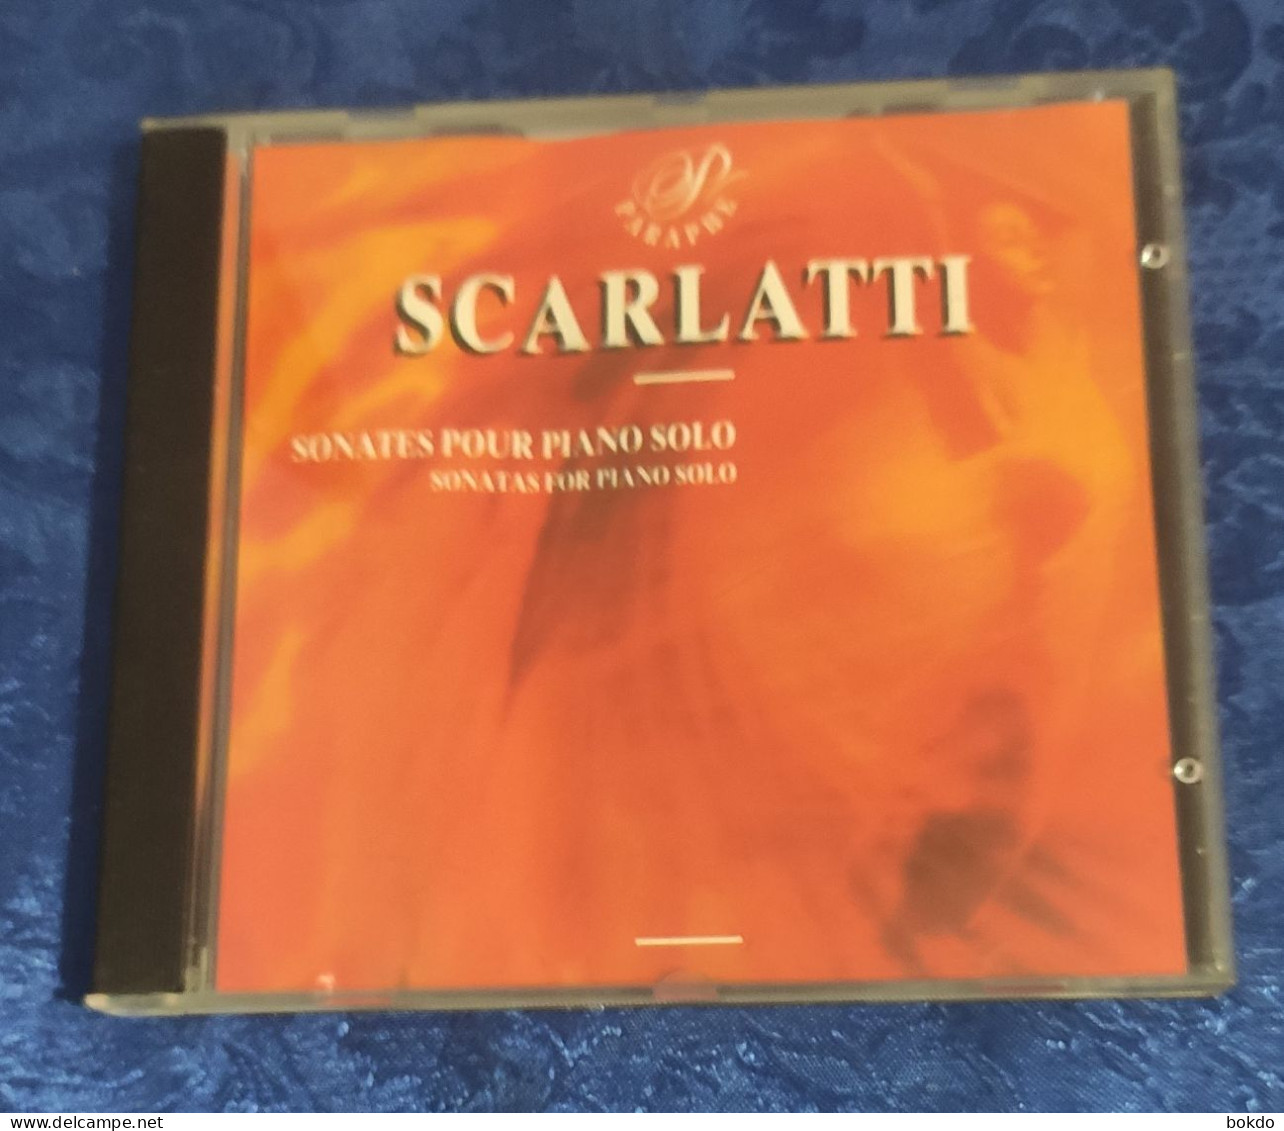 Scarlatti - Sonates Pour Piano Solo - Clásica